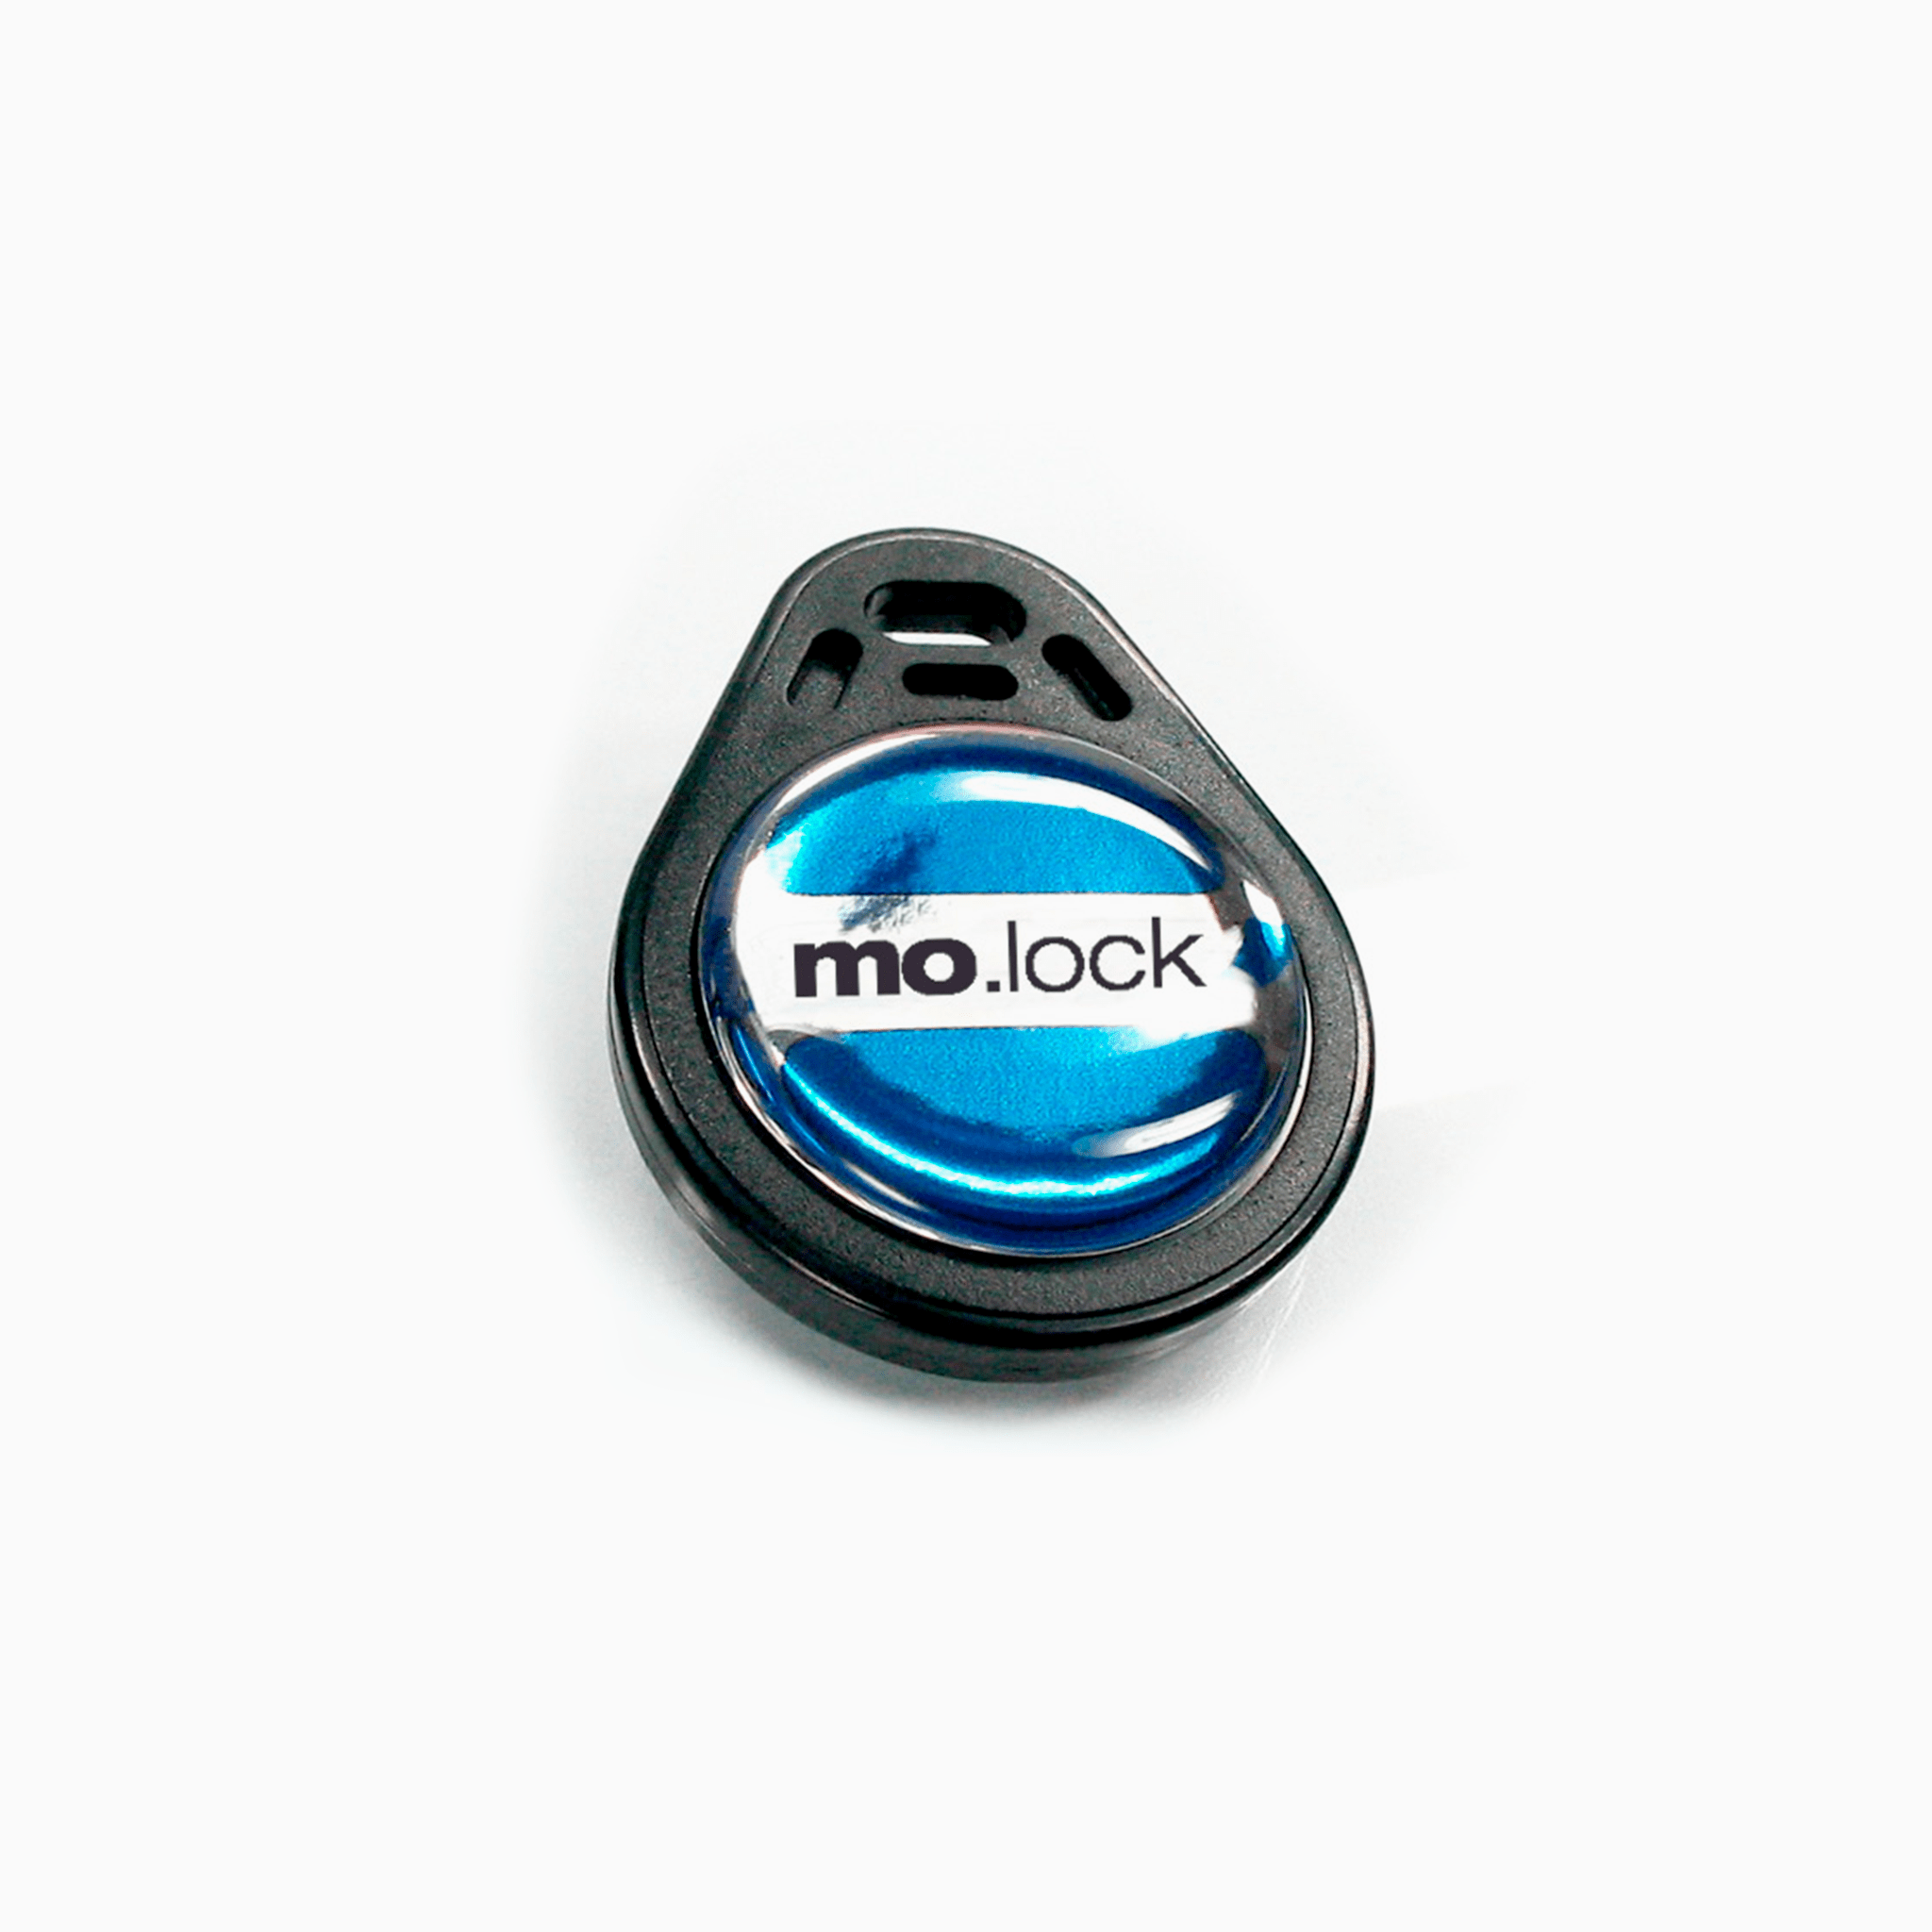 mo.lock key